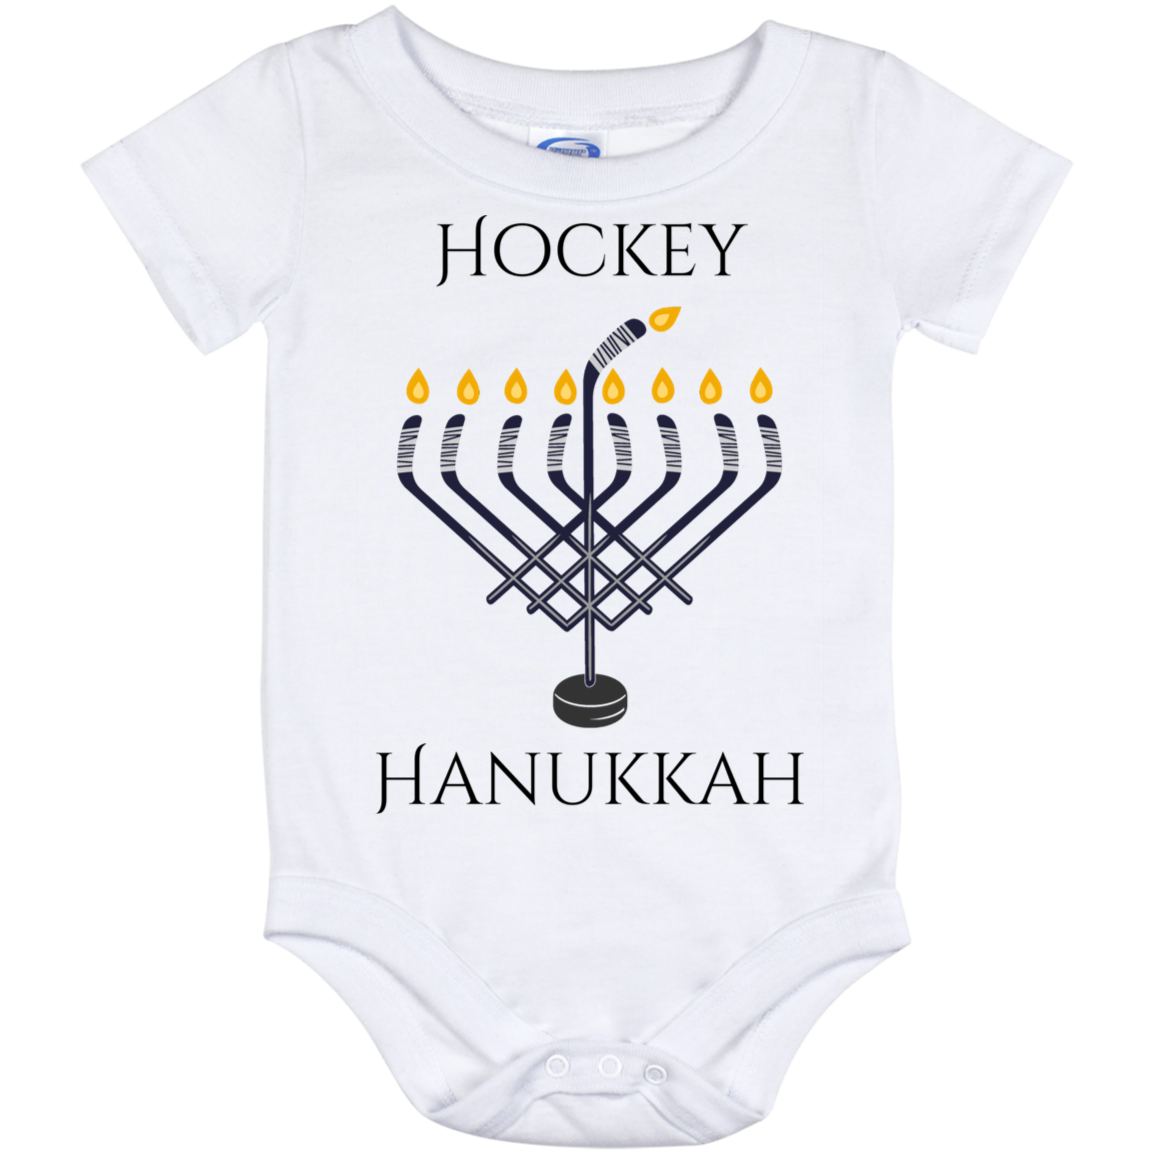 Hockey Hanukkah Baby Onesie 12 Month